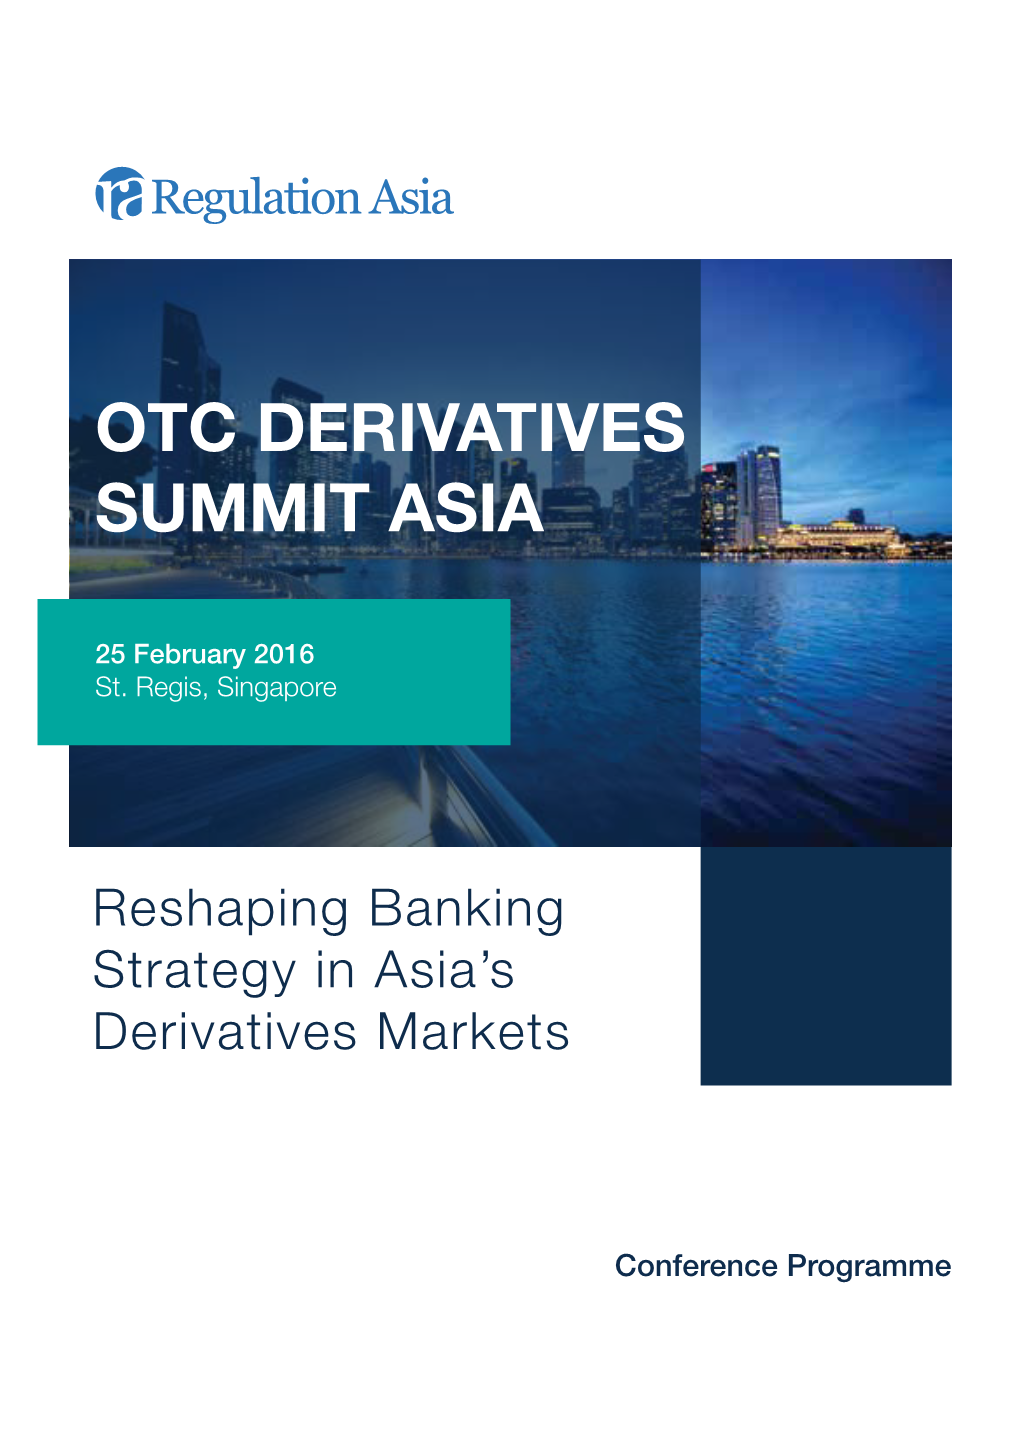 Otc Derivatives Summit Asia